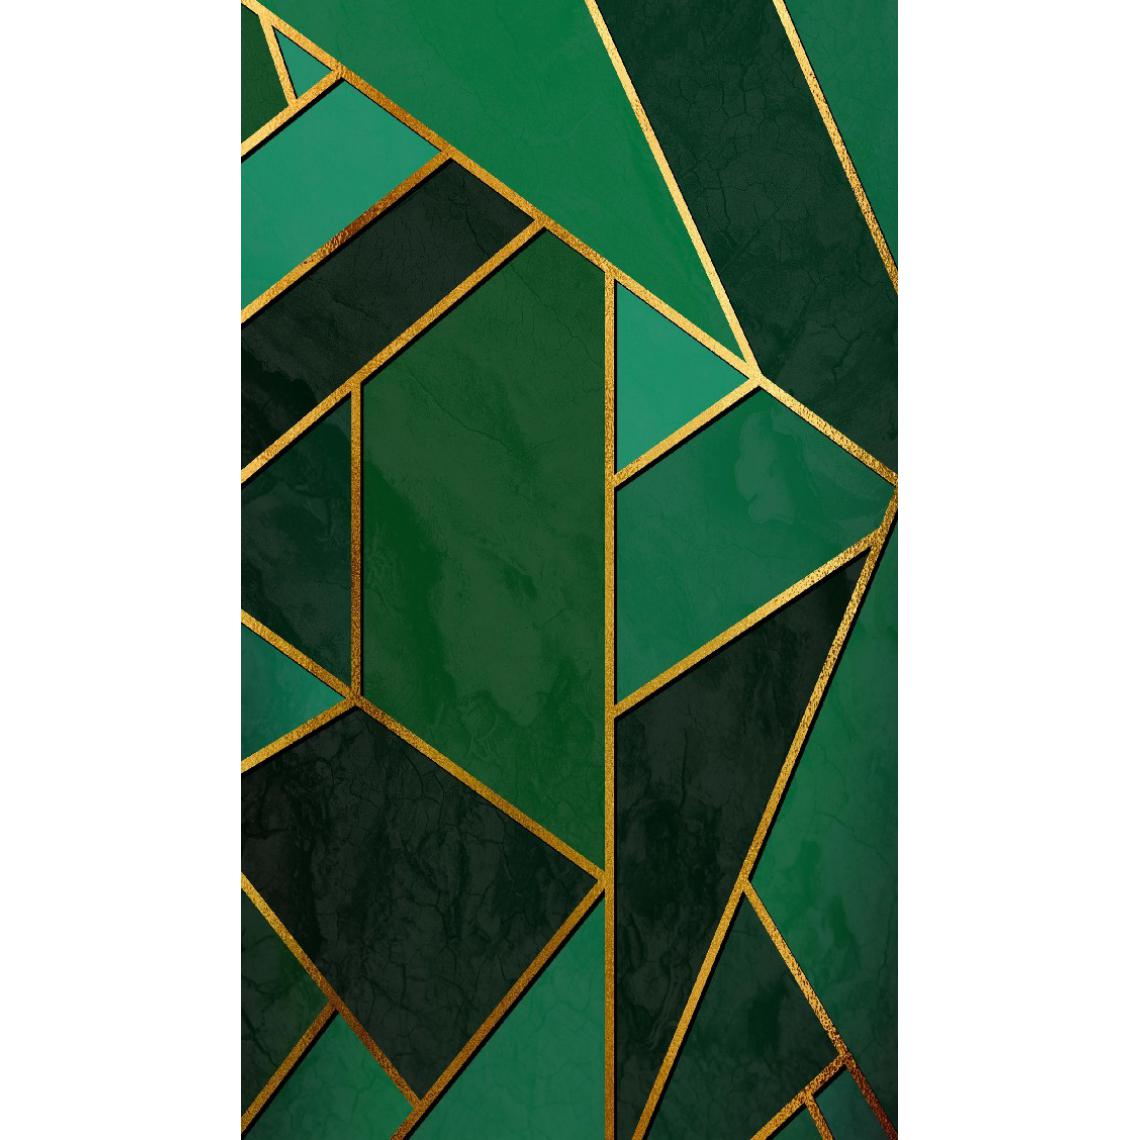 Homemania - HOMEMANIA Tapis Imprimé Gold Mosaic 1 - Géométrique - Décoration de Maison - Antidérapant - Pour Salon, séjour, chambre à coucher - Multicolore en Polyester, Coton, 80 x 150 cm - Tapis